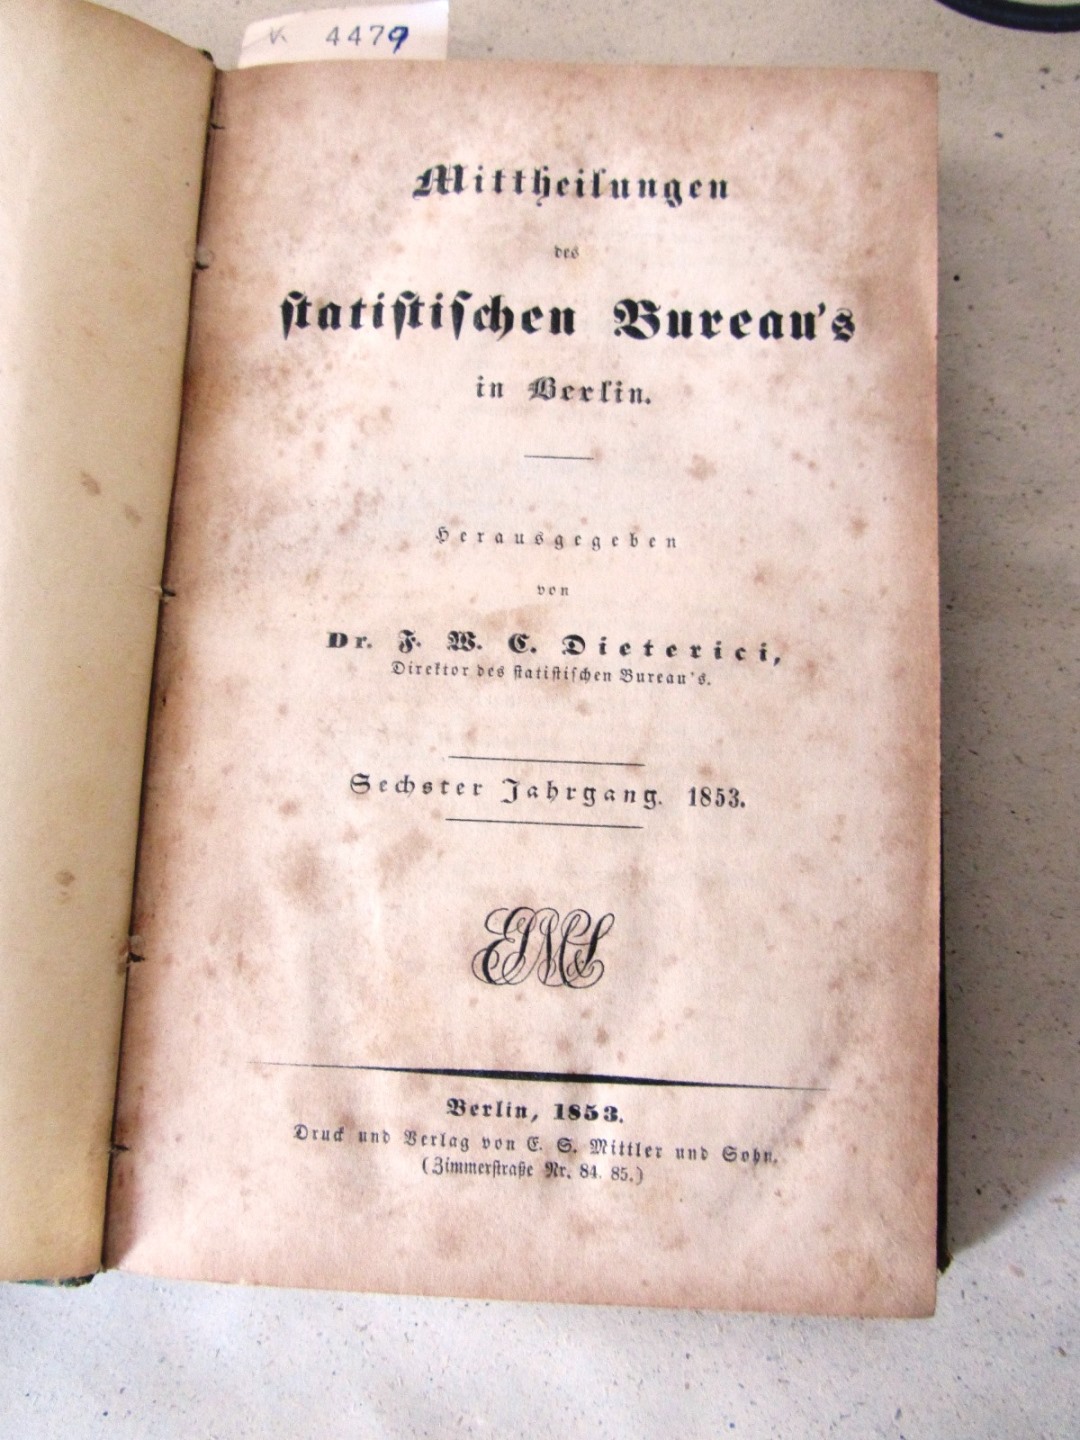 Dieterici, F.W.C.:  Mittheilungen des statistischen Bureau`s in Berlin. 6. Jahrgang 1854. 